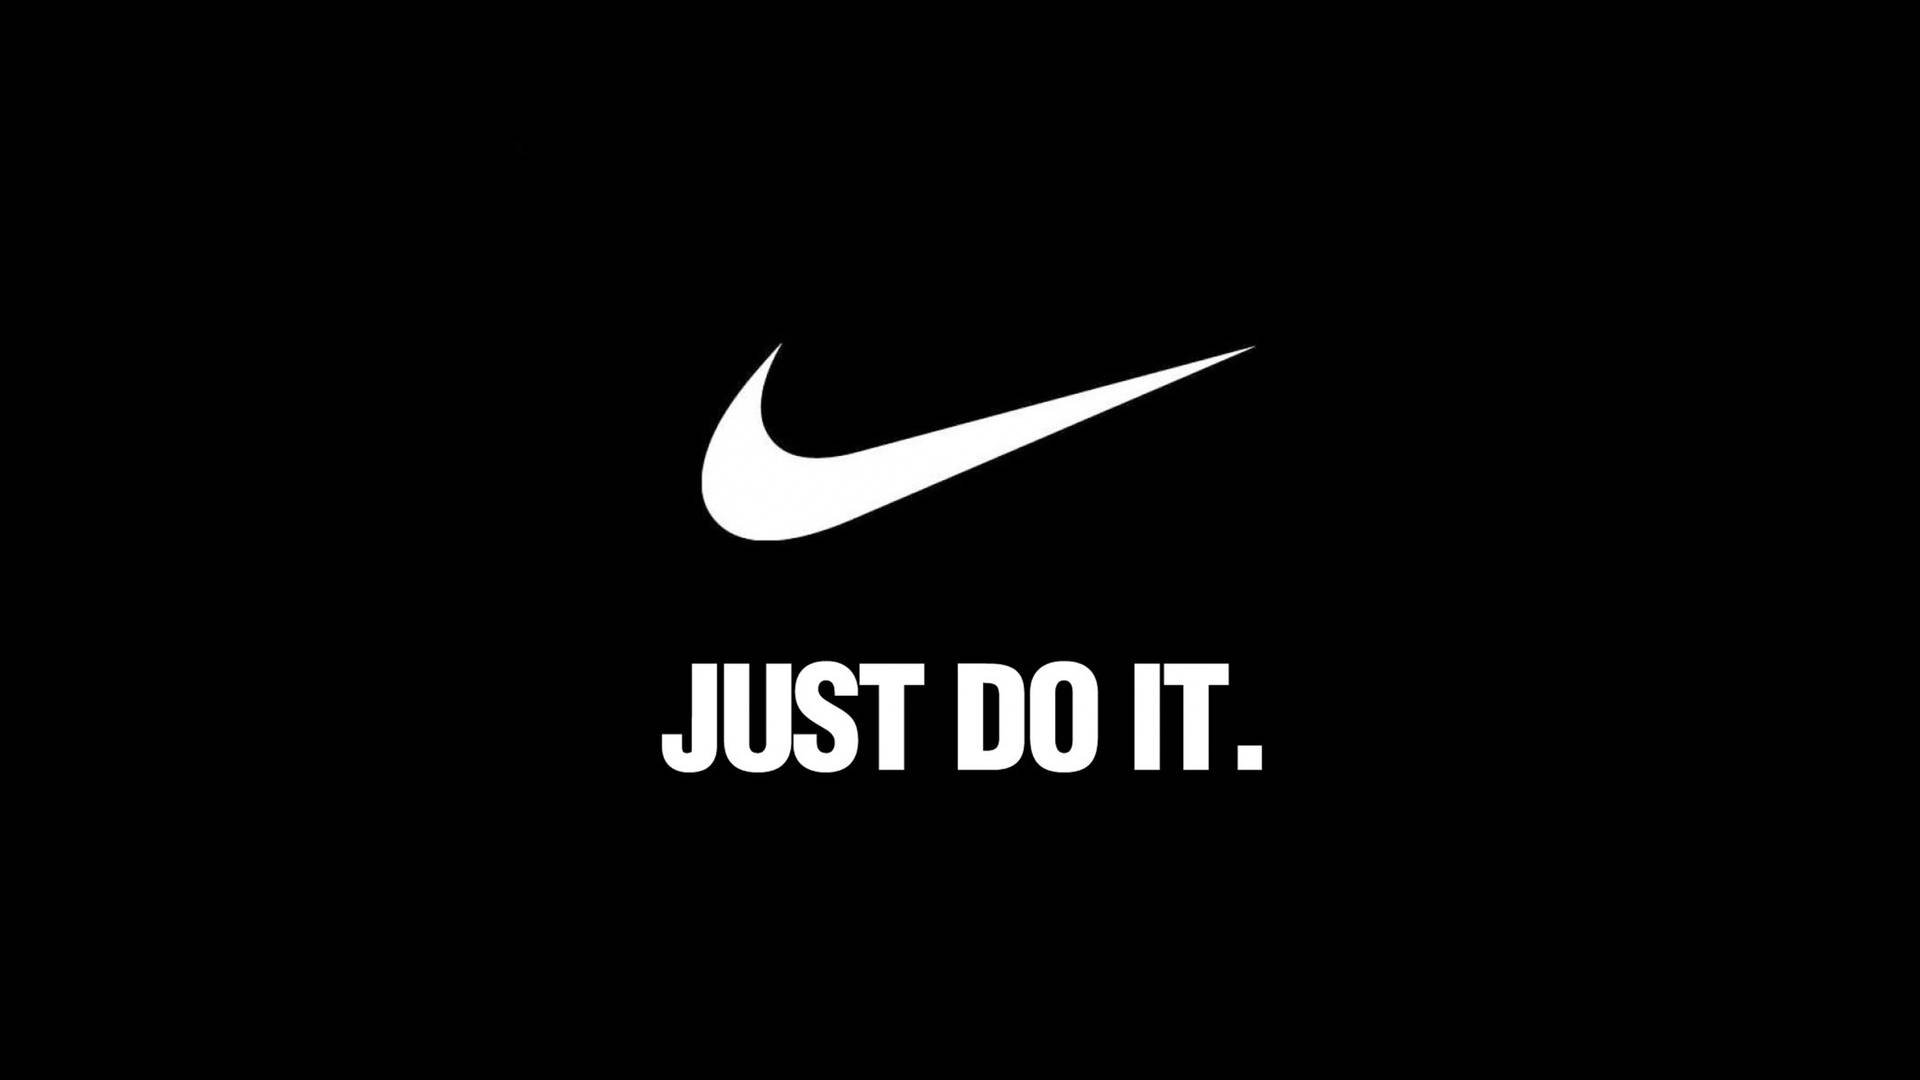 Nike Logo Just Do It Black Background